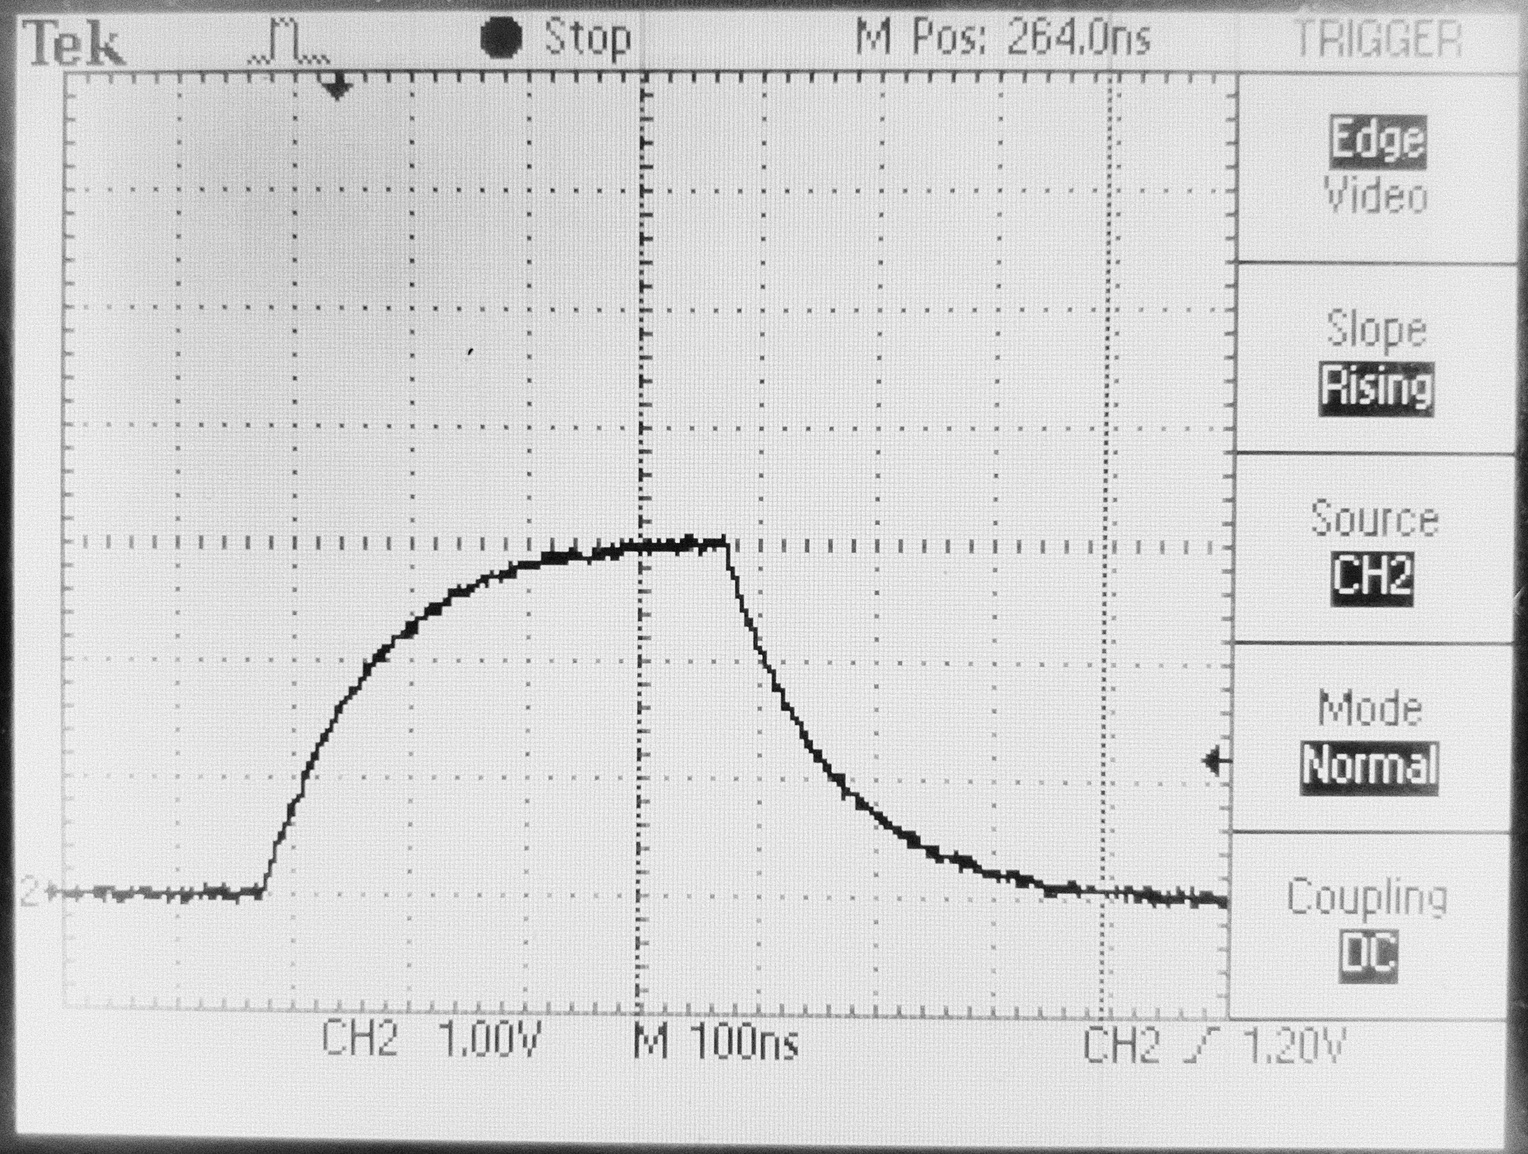 1PPS pulse after 3.3v voltage divider